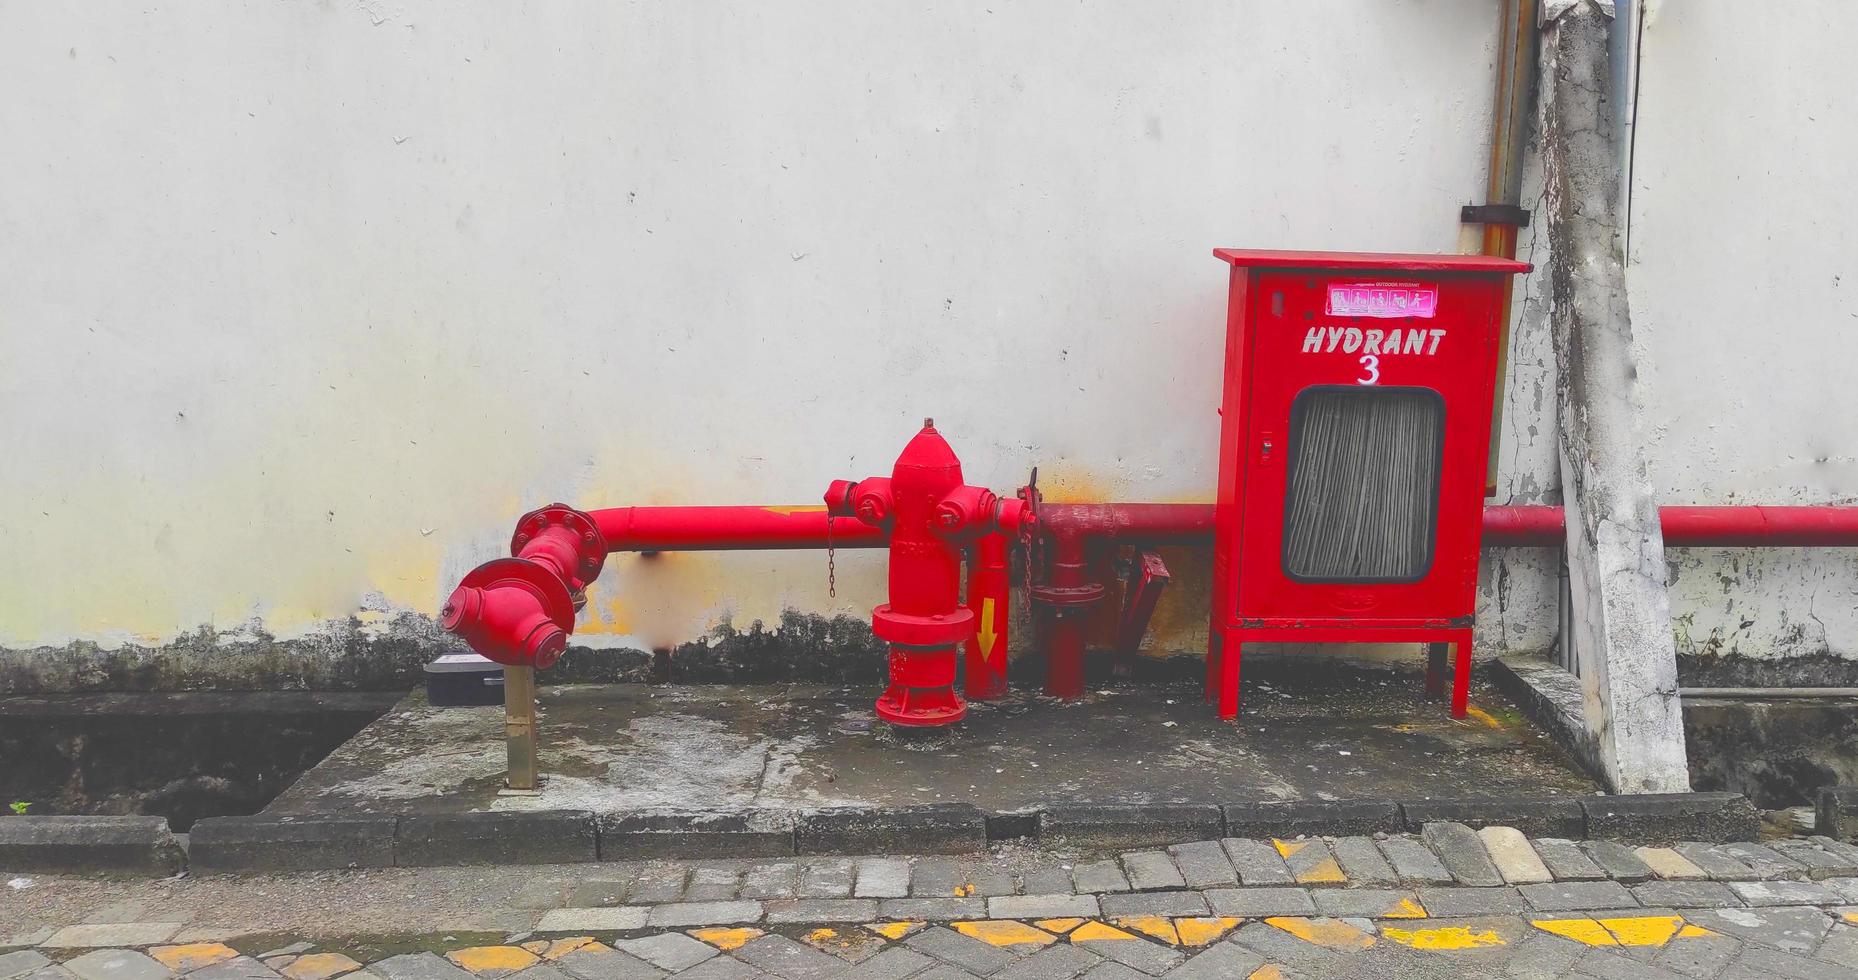 hidrante completo con manguera contra incendios ubicado al aire libre foto